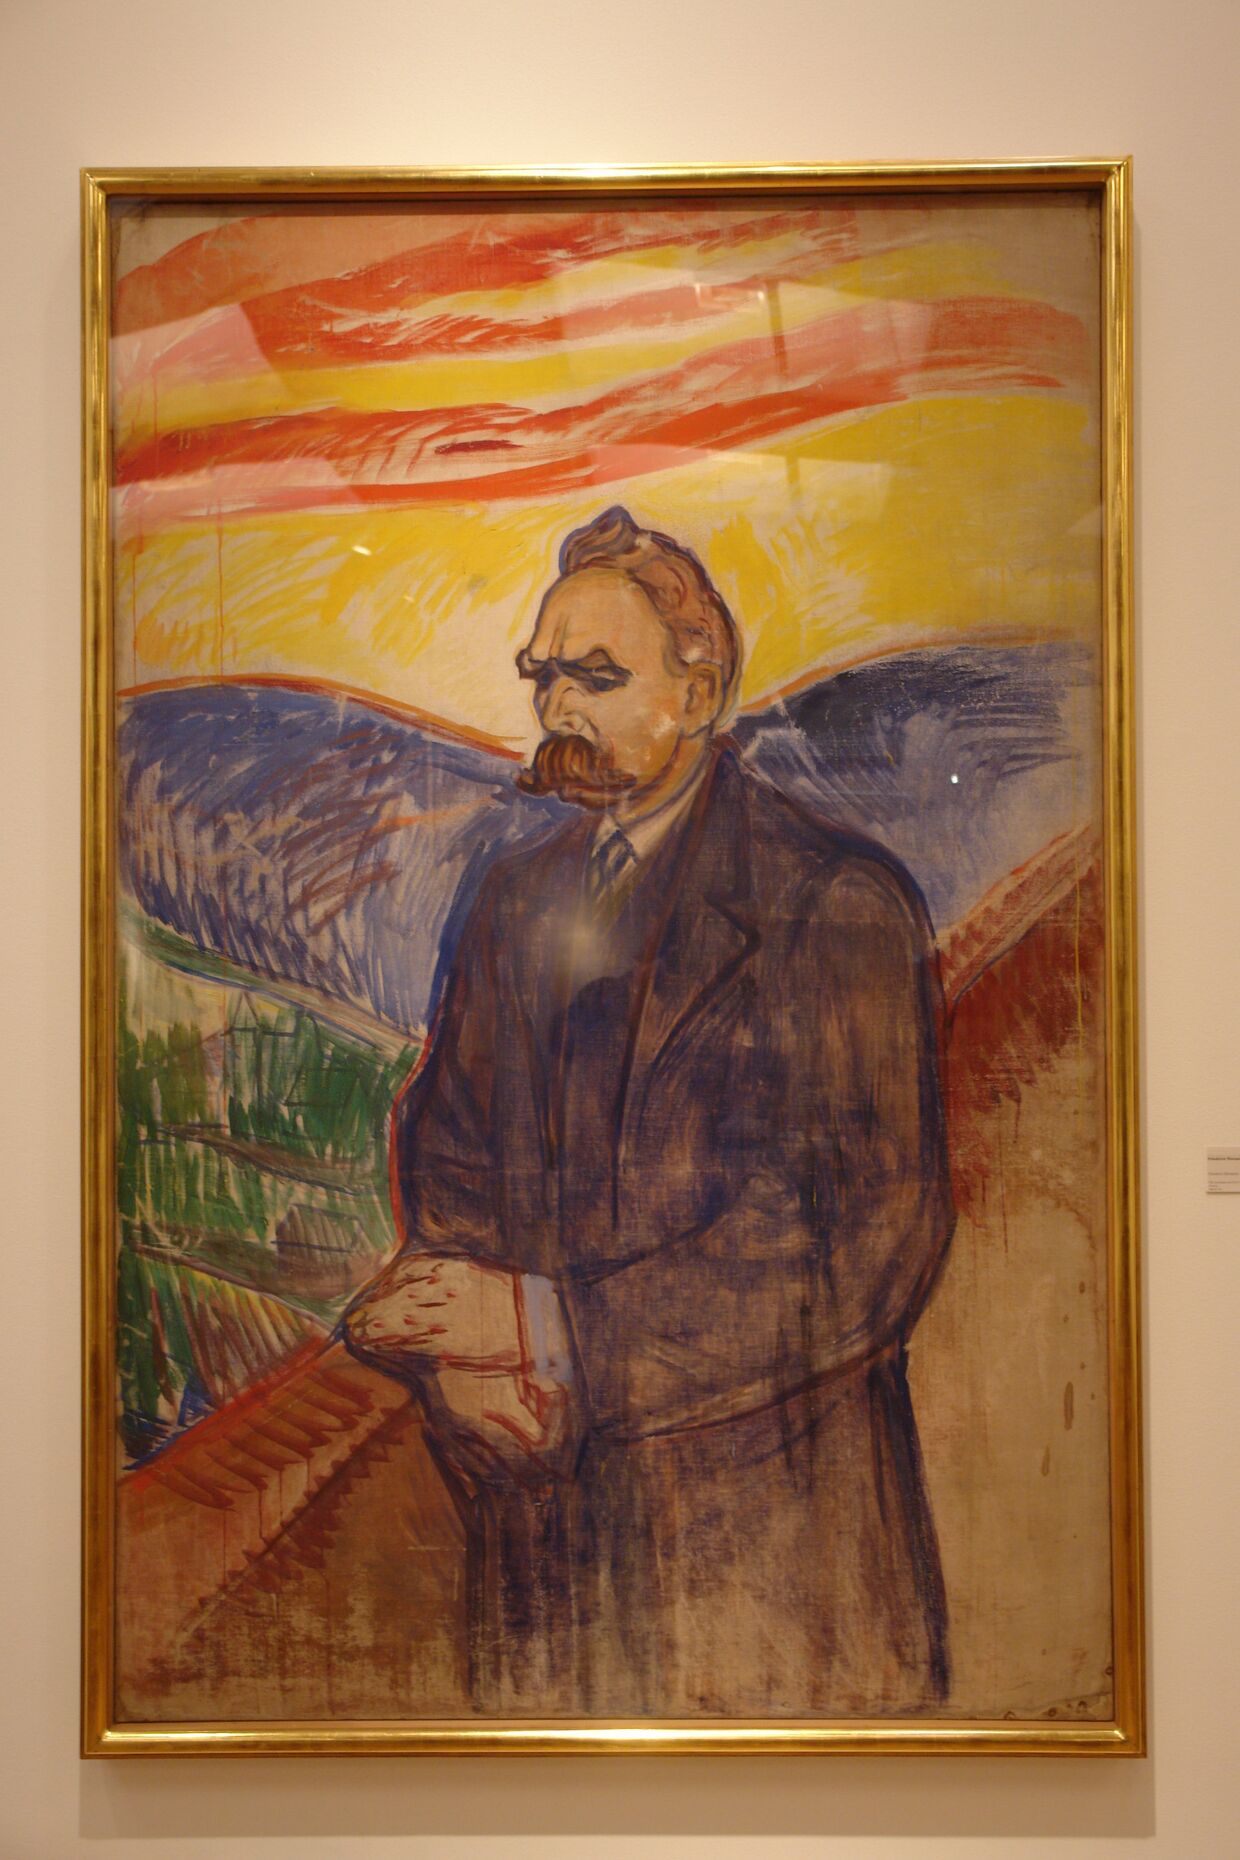 Эдвард Мунк. Портрет Фридриха Ницше. 1906 год.